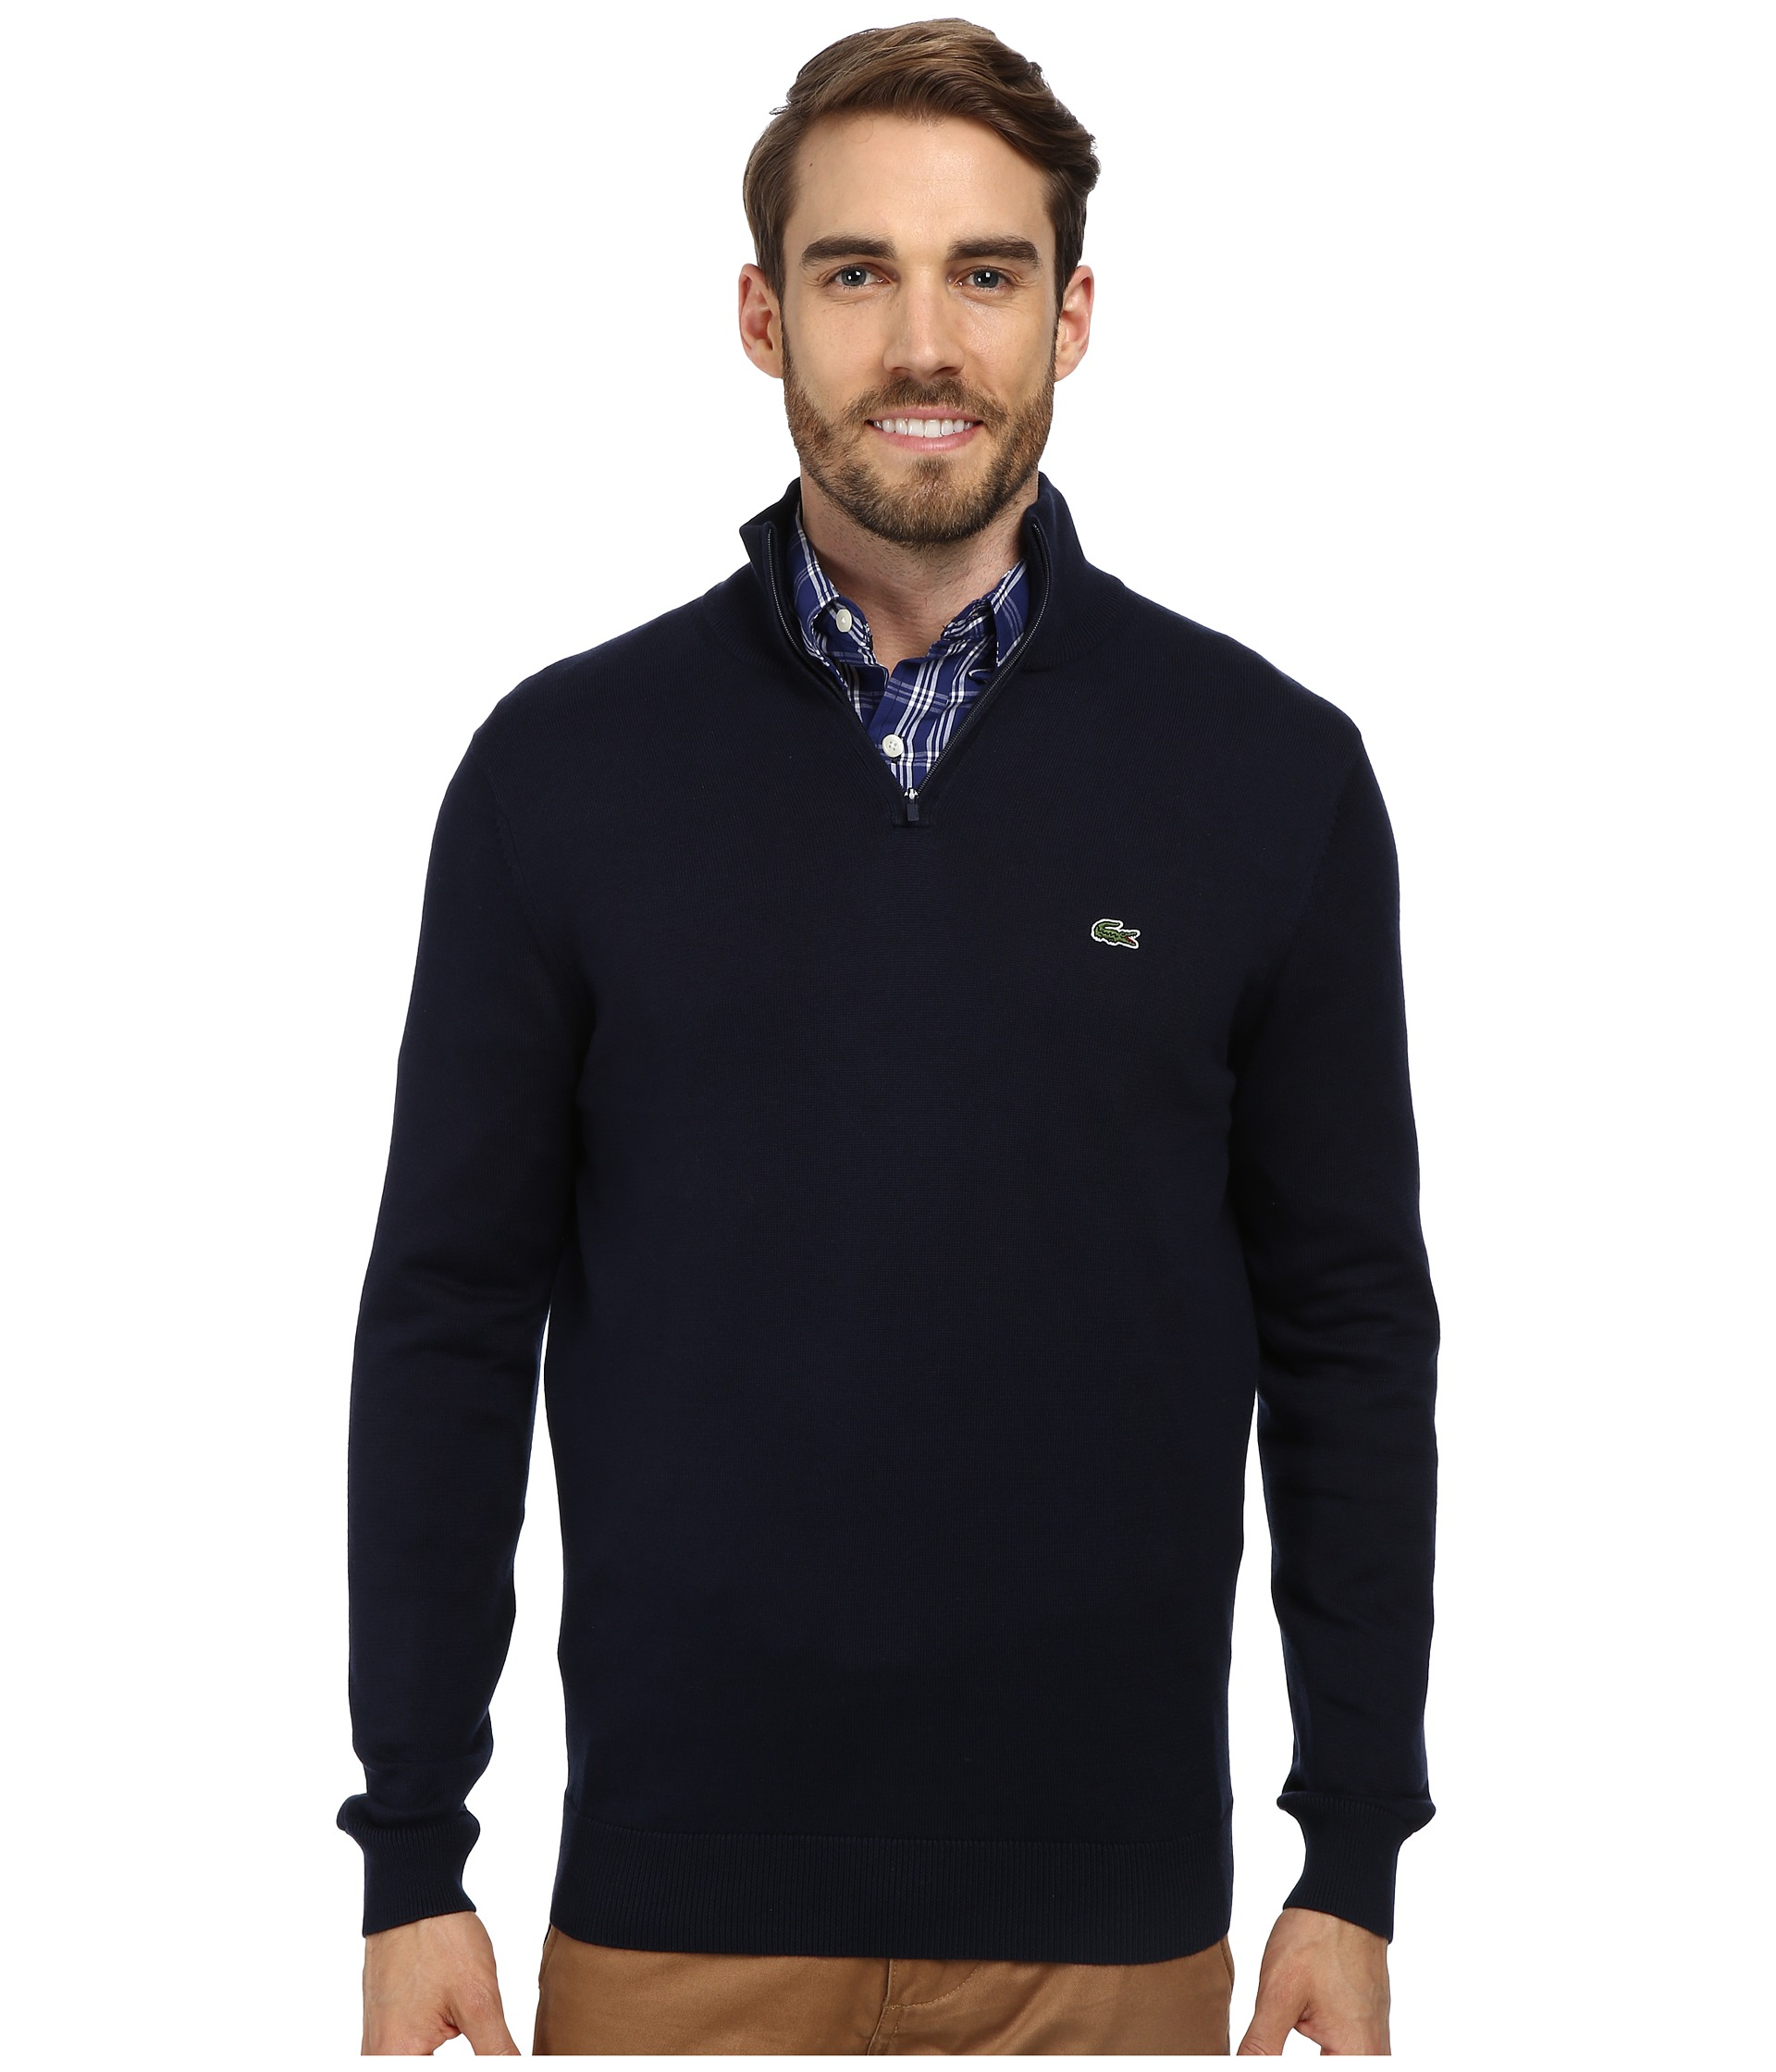 lacoste men's zip cardigan long sleeve sweatshirt